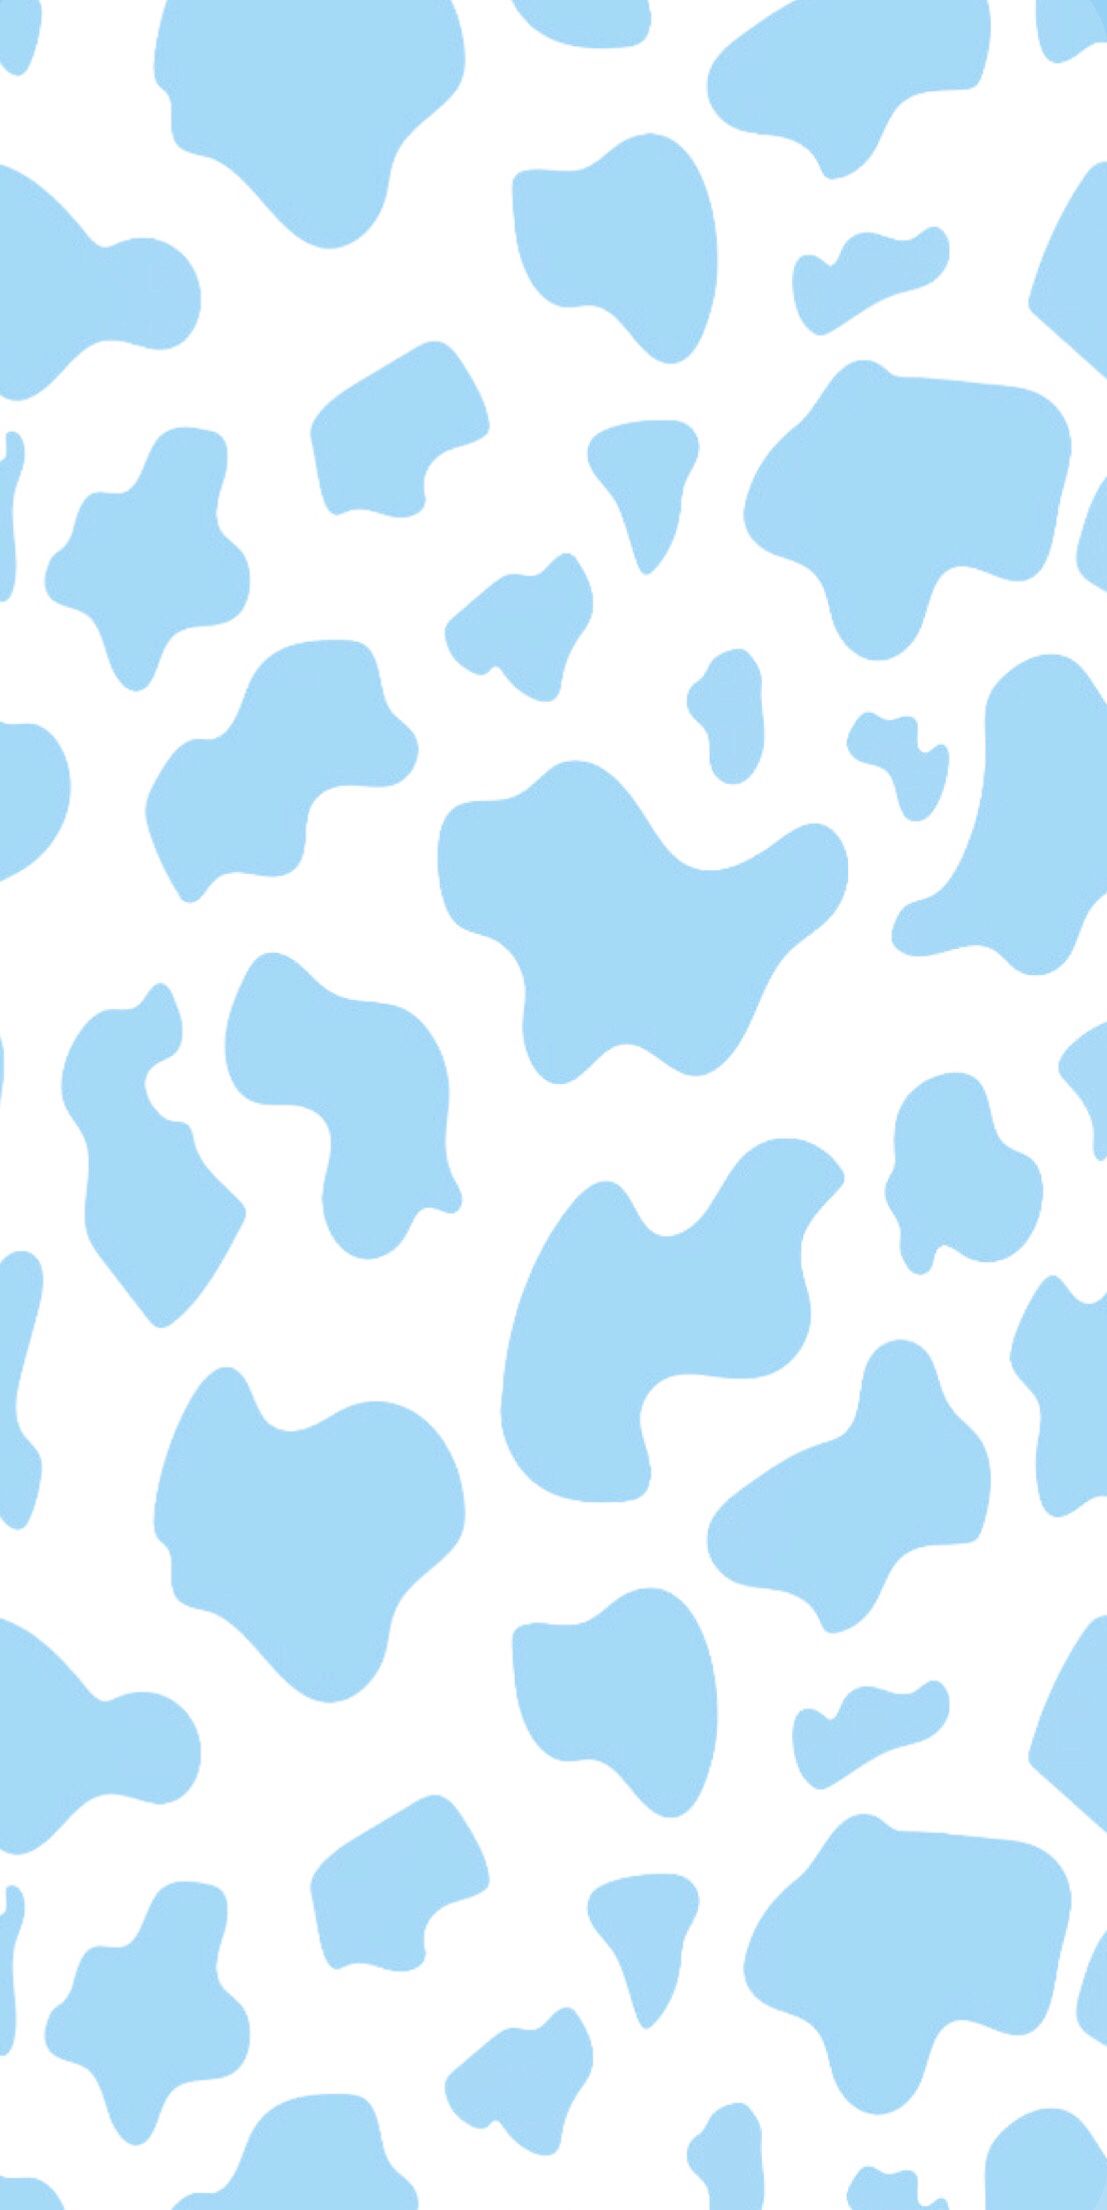 blue cow print wallpaper. Cow print wallpaper, Cow wallpaper, Cute blue wallpaper